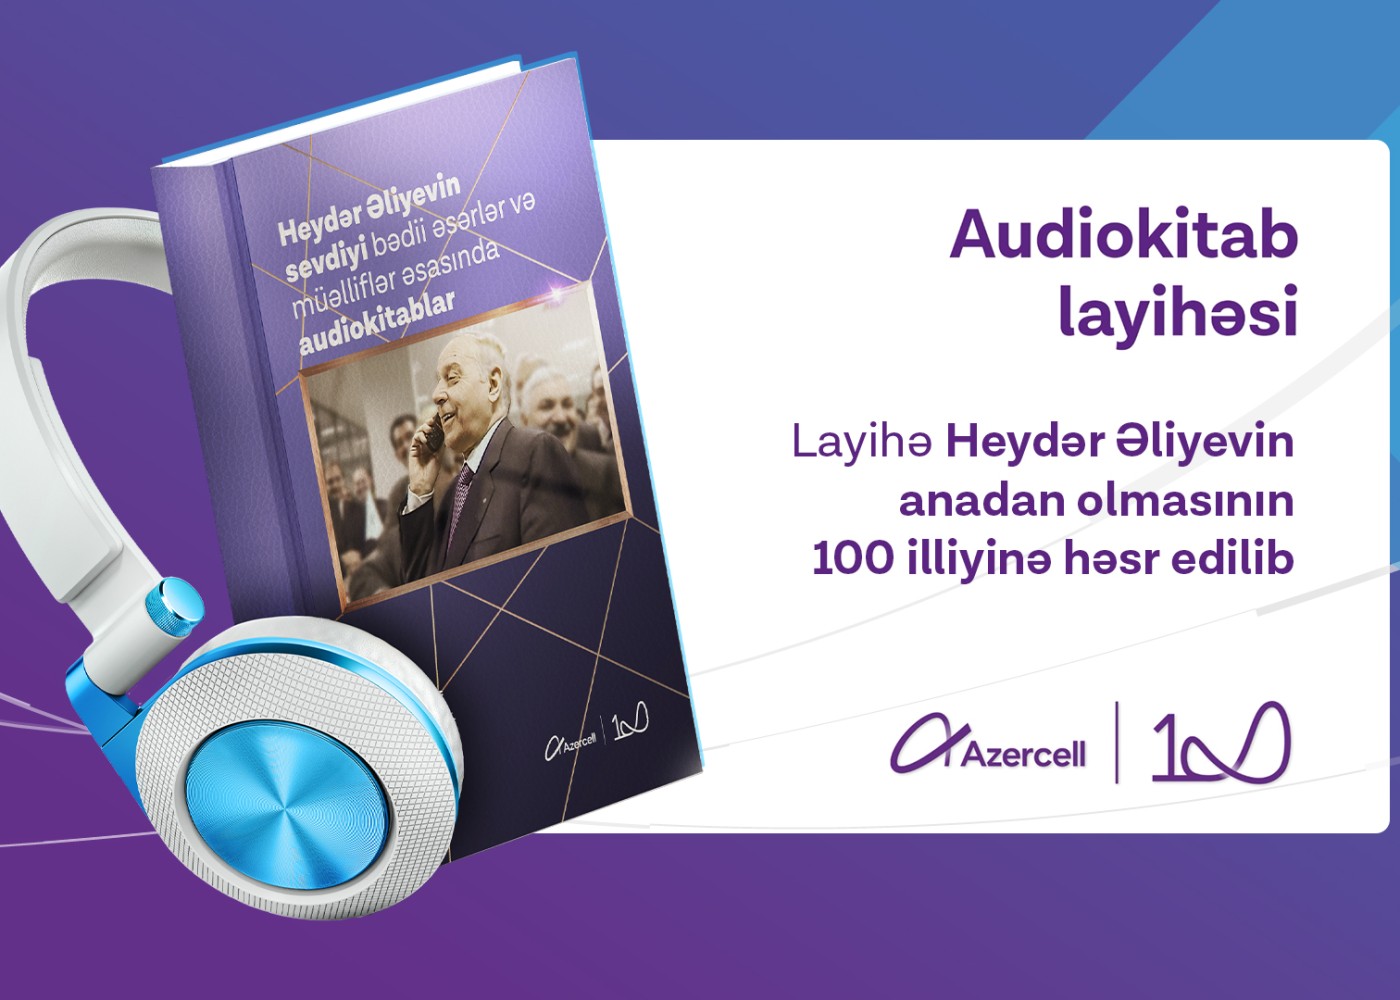 "Azercell” Heydər Əliyevin ən sevdiyi kitabları audio və elektron formatlarda təqdim edir - VİDEO